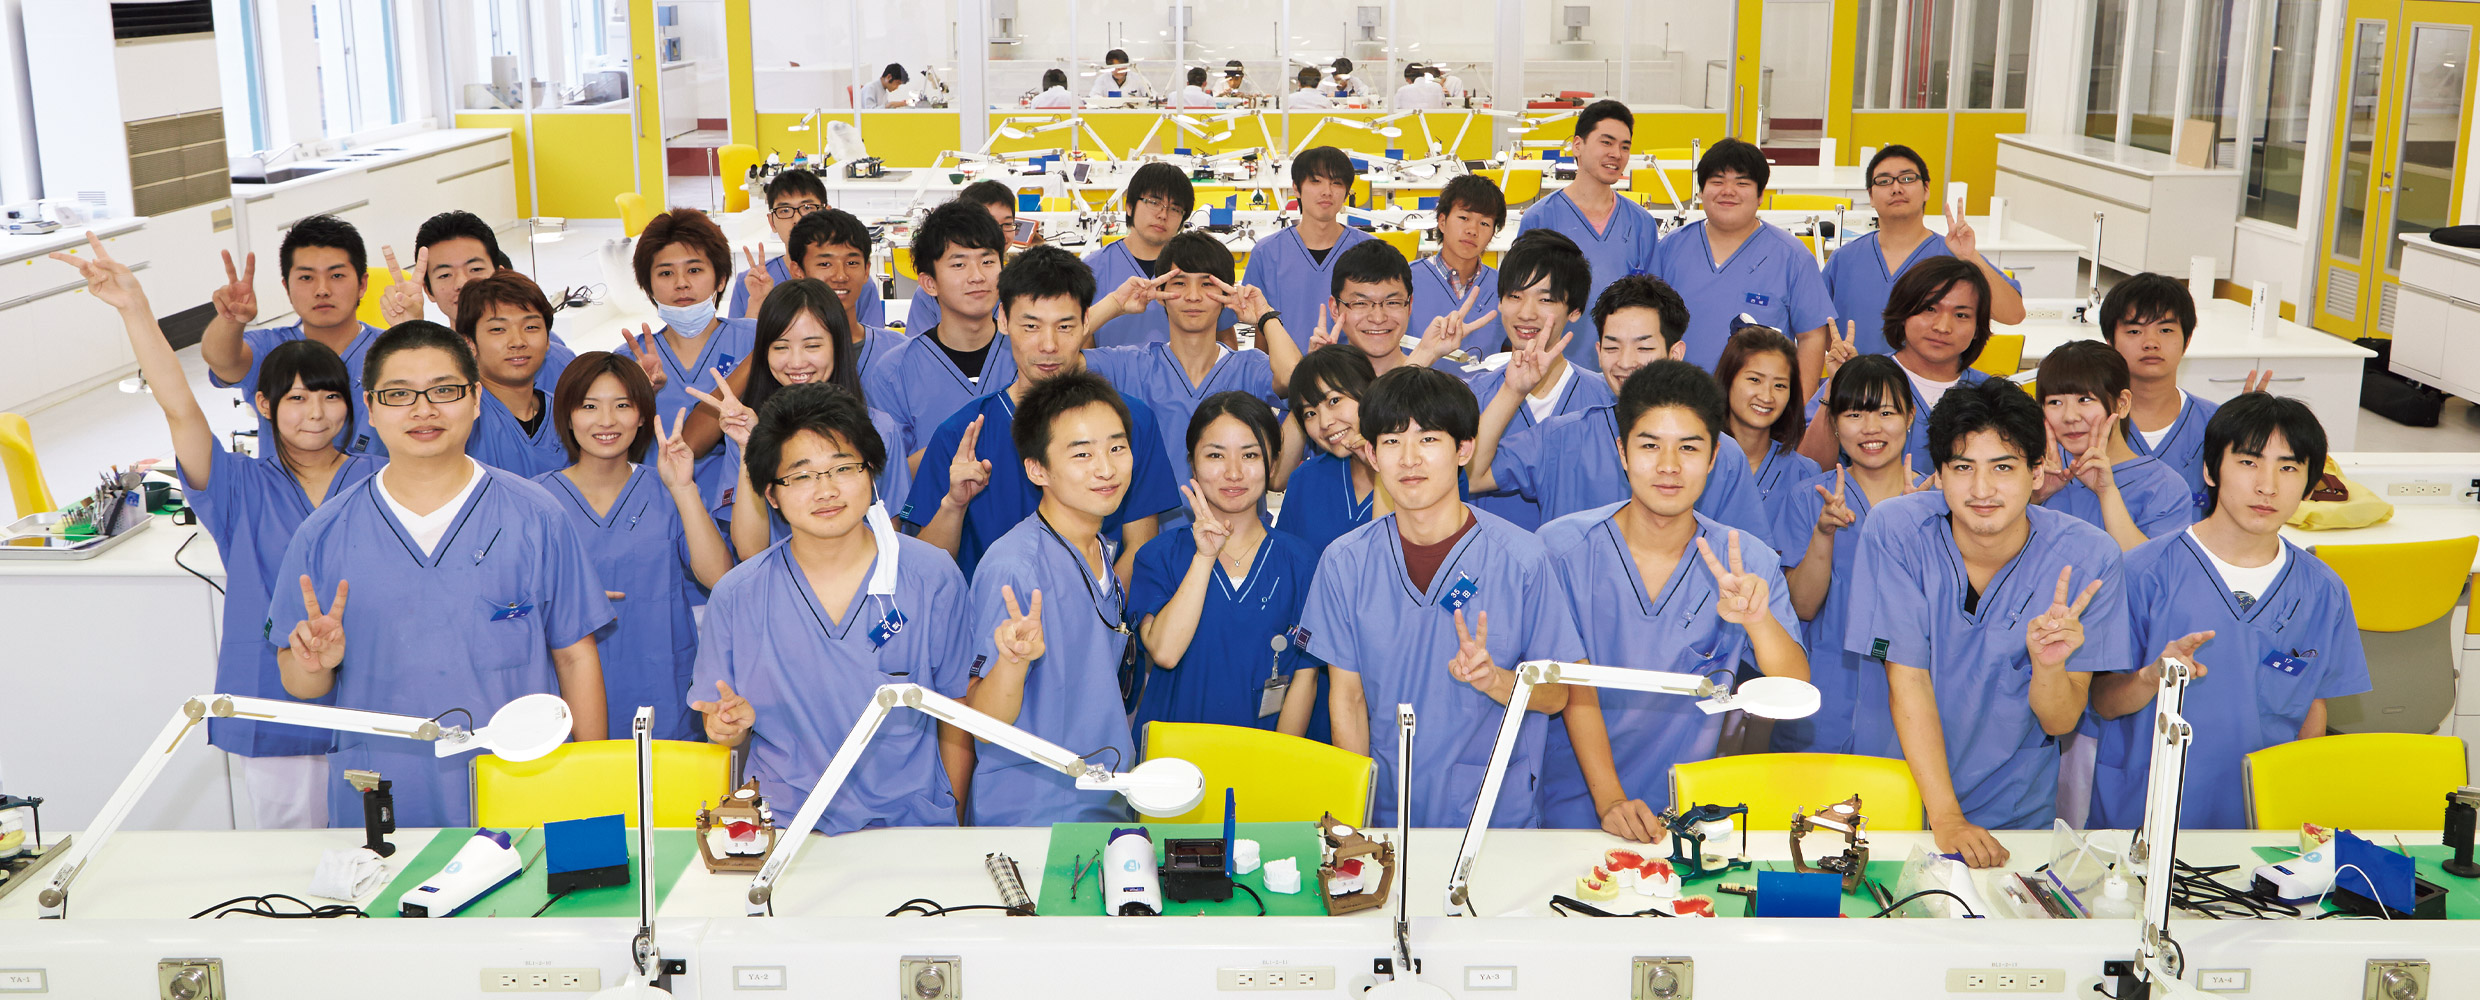 横浜歯科技術専門学校 のユニフォーム採用事例 医療白衣・事務服ユニフォームのフォーク